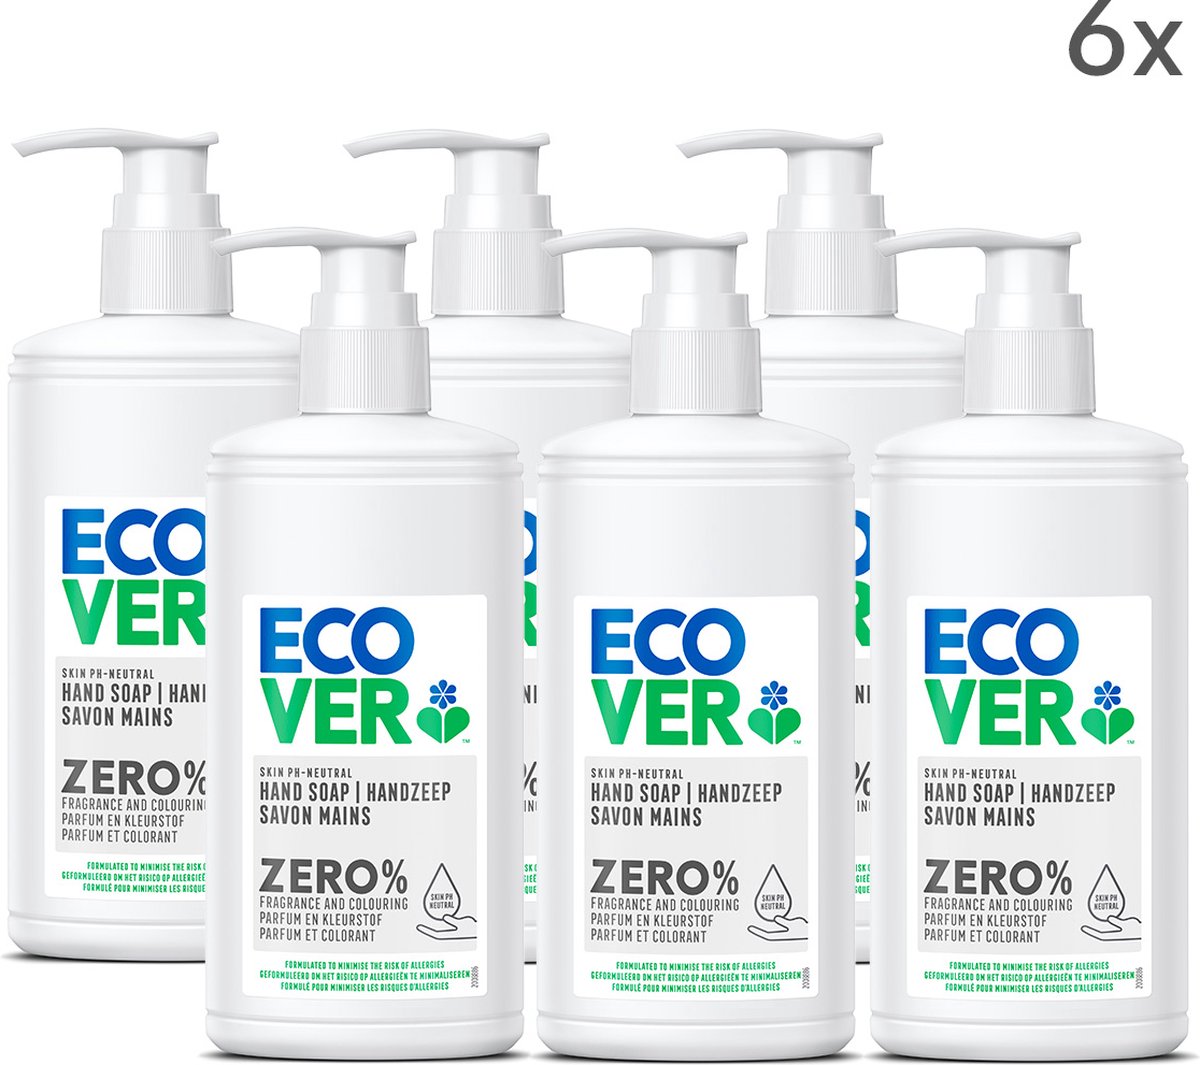 Ecover Ecologische Handzeep - ZERO - 0% zeep - 6 x 250ml - Voordeelverpakking